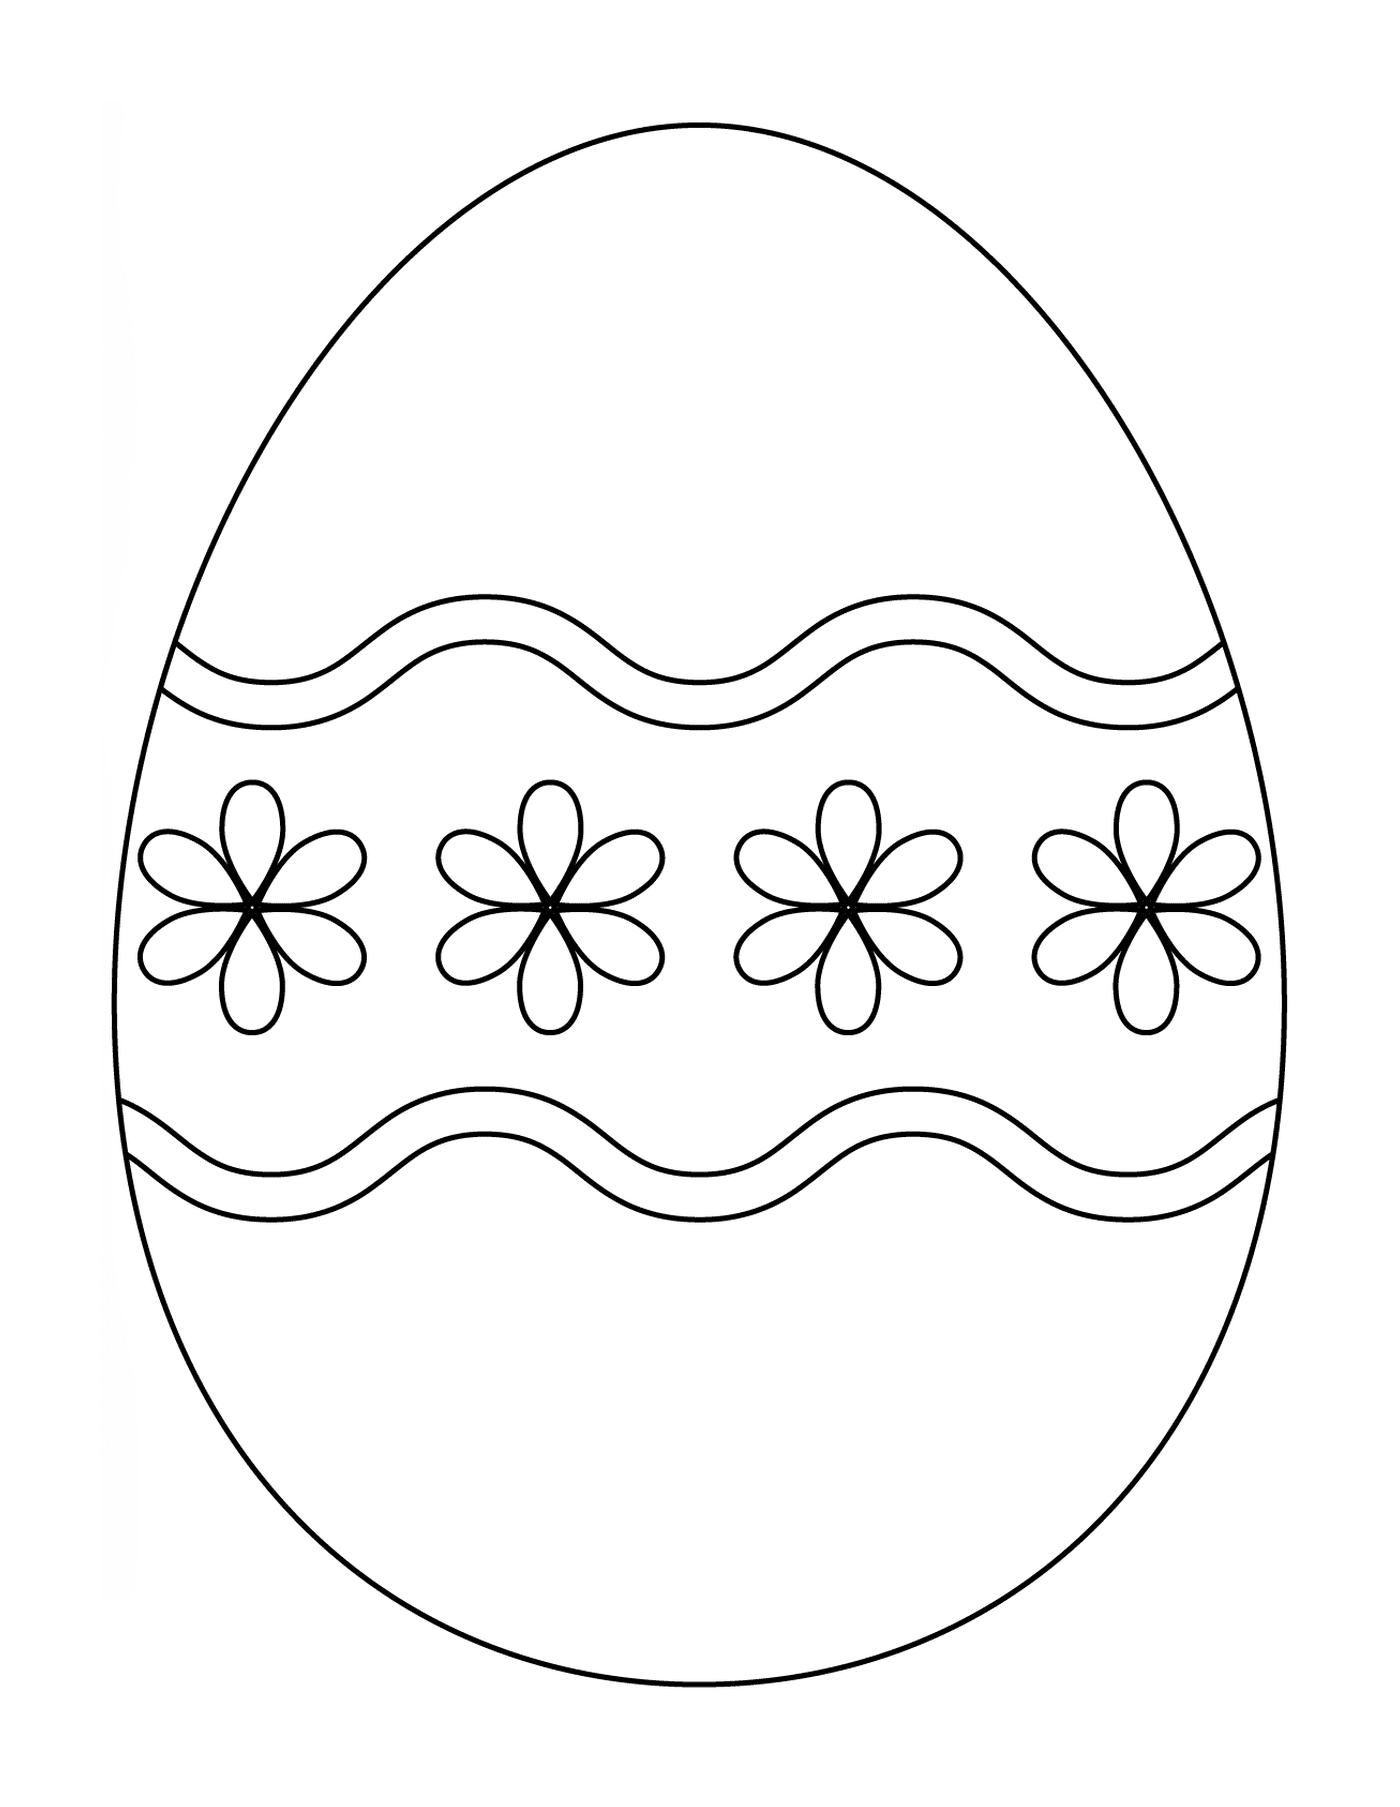   Oeuf de Pâques avec un motif floral simple 